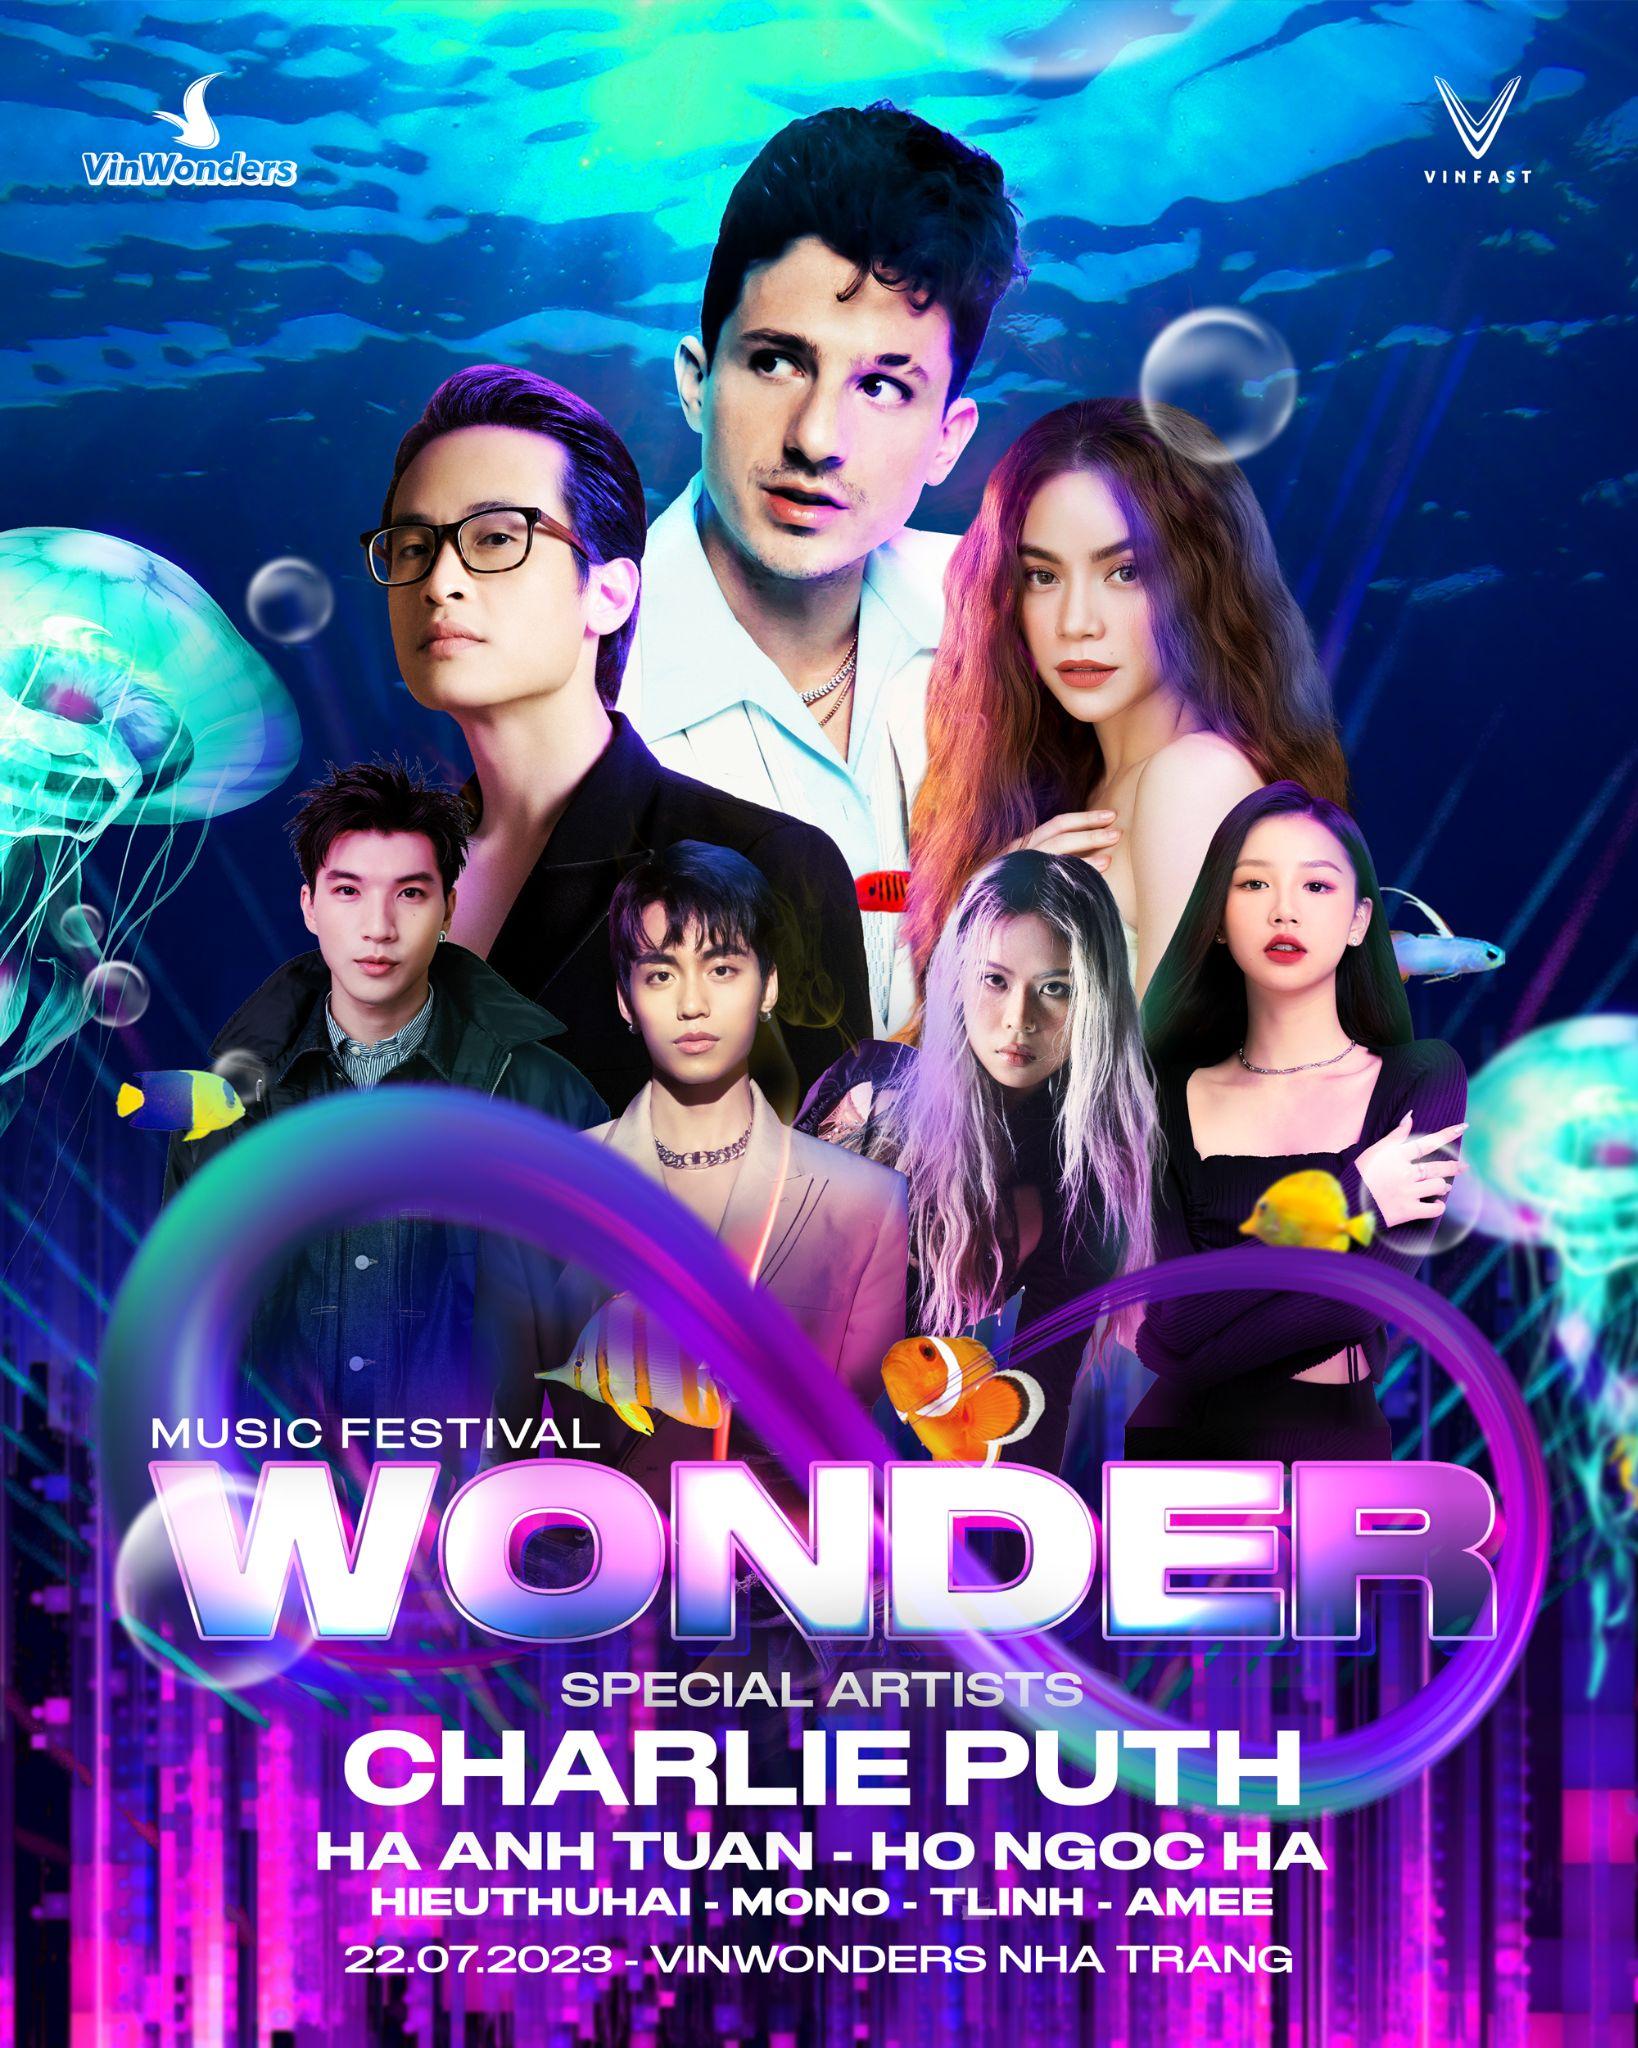 8Wonder chính thức mở bán vé, lộ diện dàn sao Việt với Hà Anh Tuấn, Hồ Ngọc Hà biểu diễn cùng Charlie Puth - Ảnh 1.